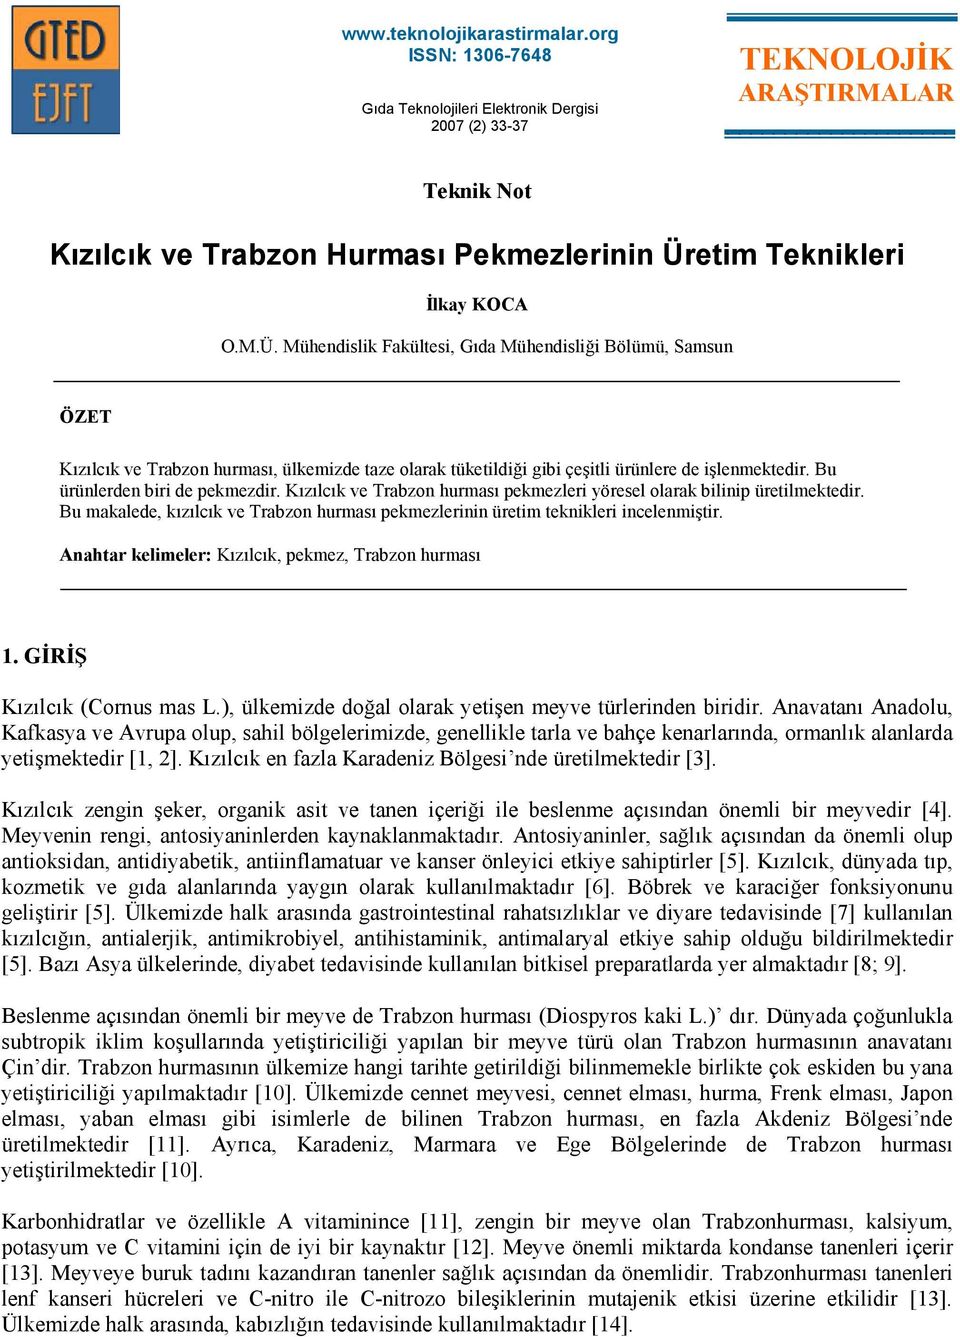 Kızılcık ve Trabzon hurması pekmezleri yöresel olarak bilinip üretilmektedir. Bu makalede, kızılcık ve Trabzon hurması pekmezlerinin üretim teknikleri incelenmiştir.